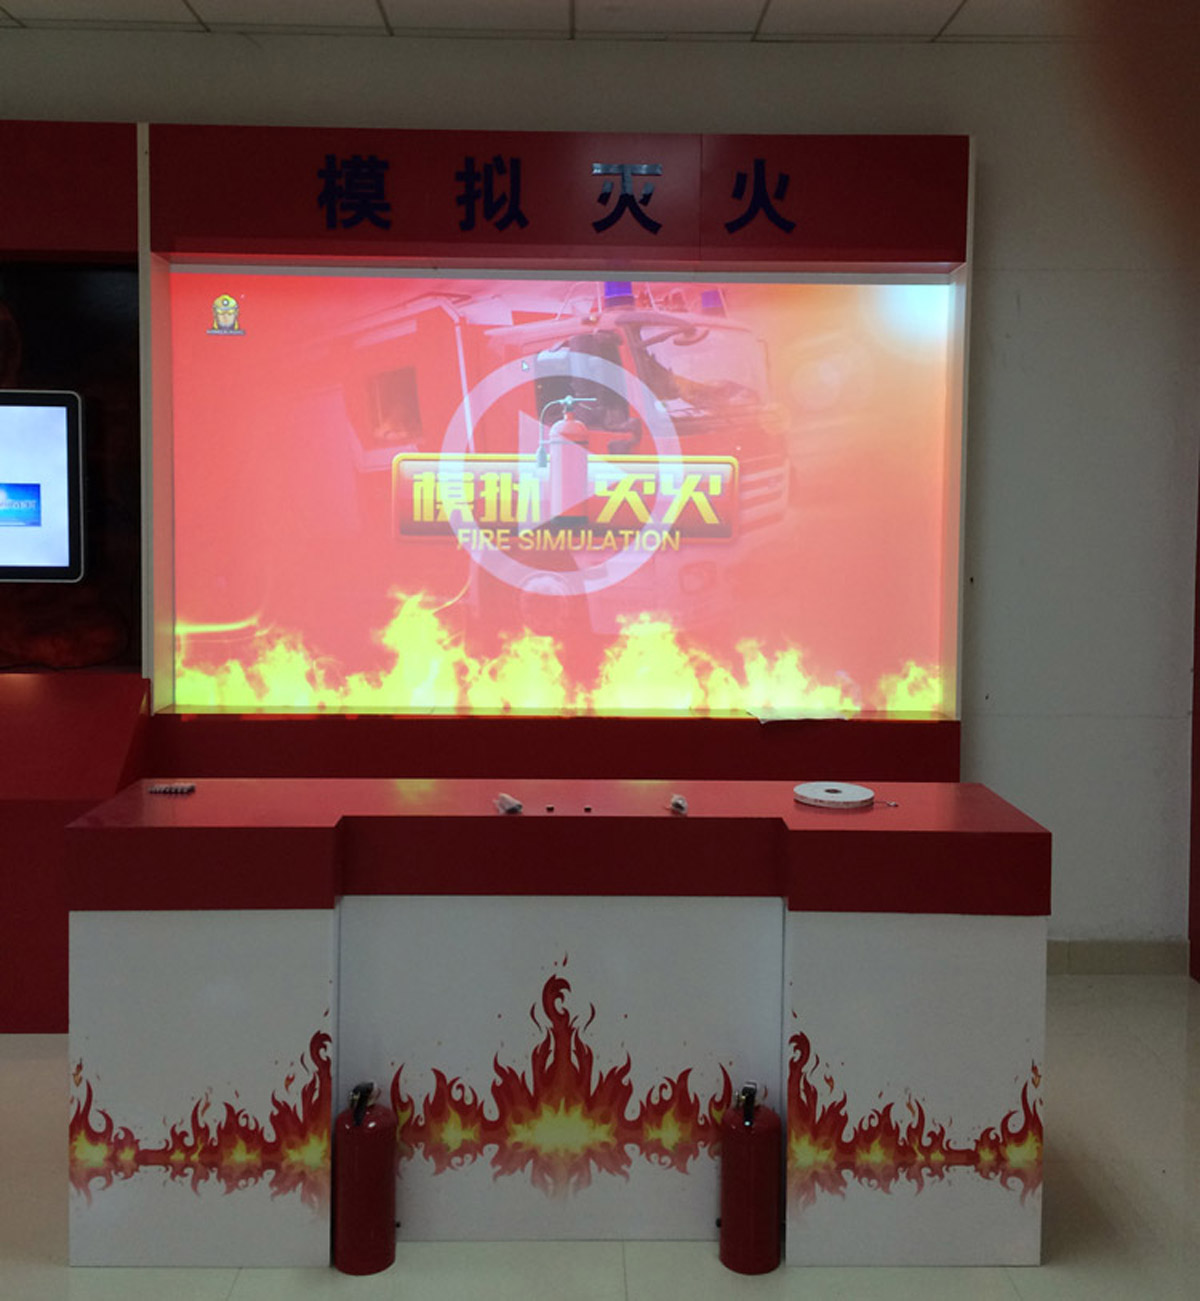 教育体验大屏幕模拟灭火体验设备.jpg